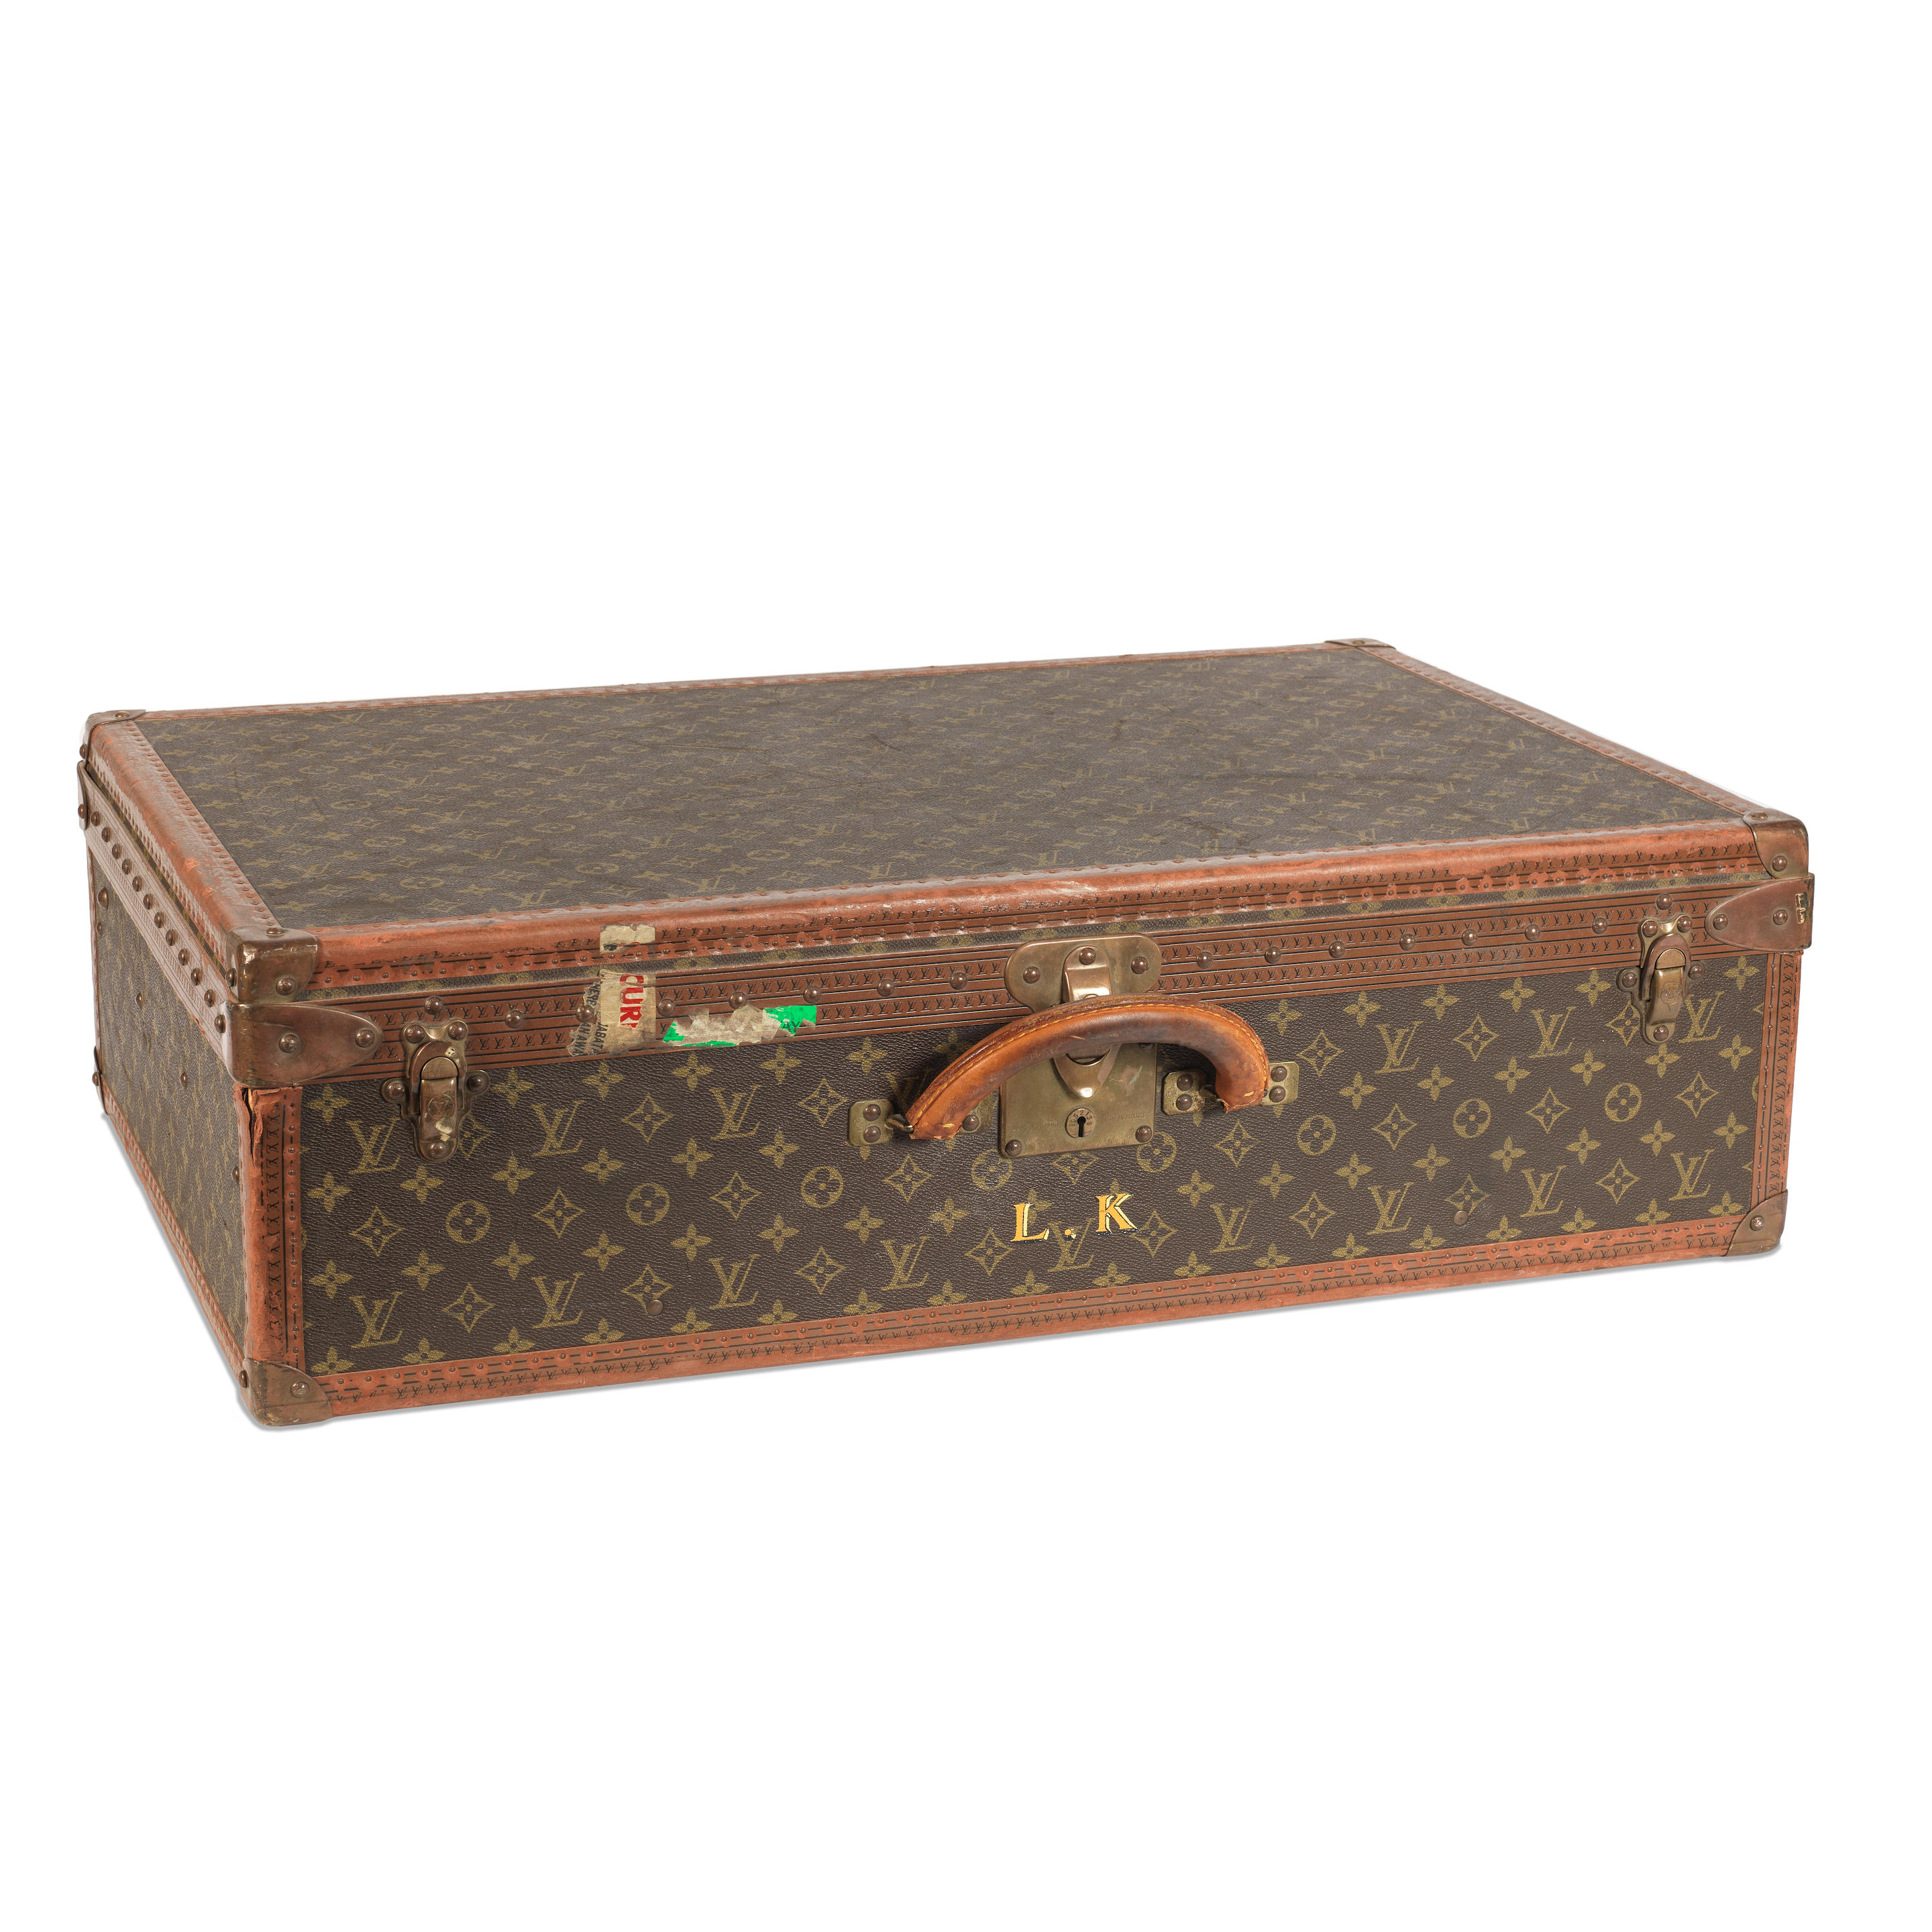 Sold at Auction: Louis Vuitton Alzer 75 Suitcase